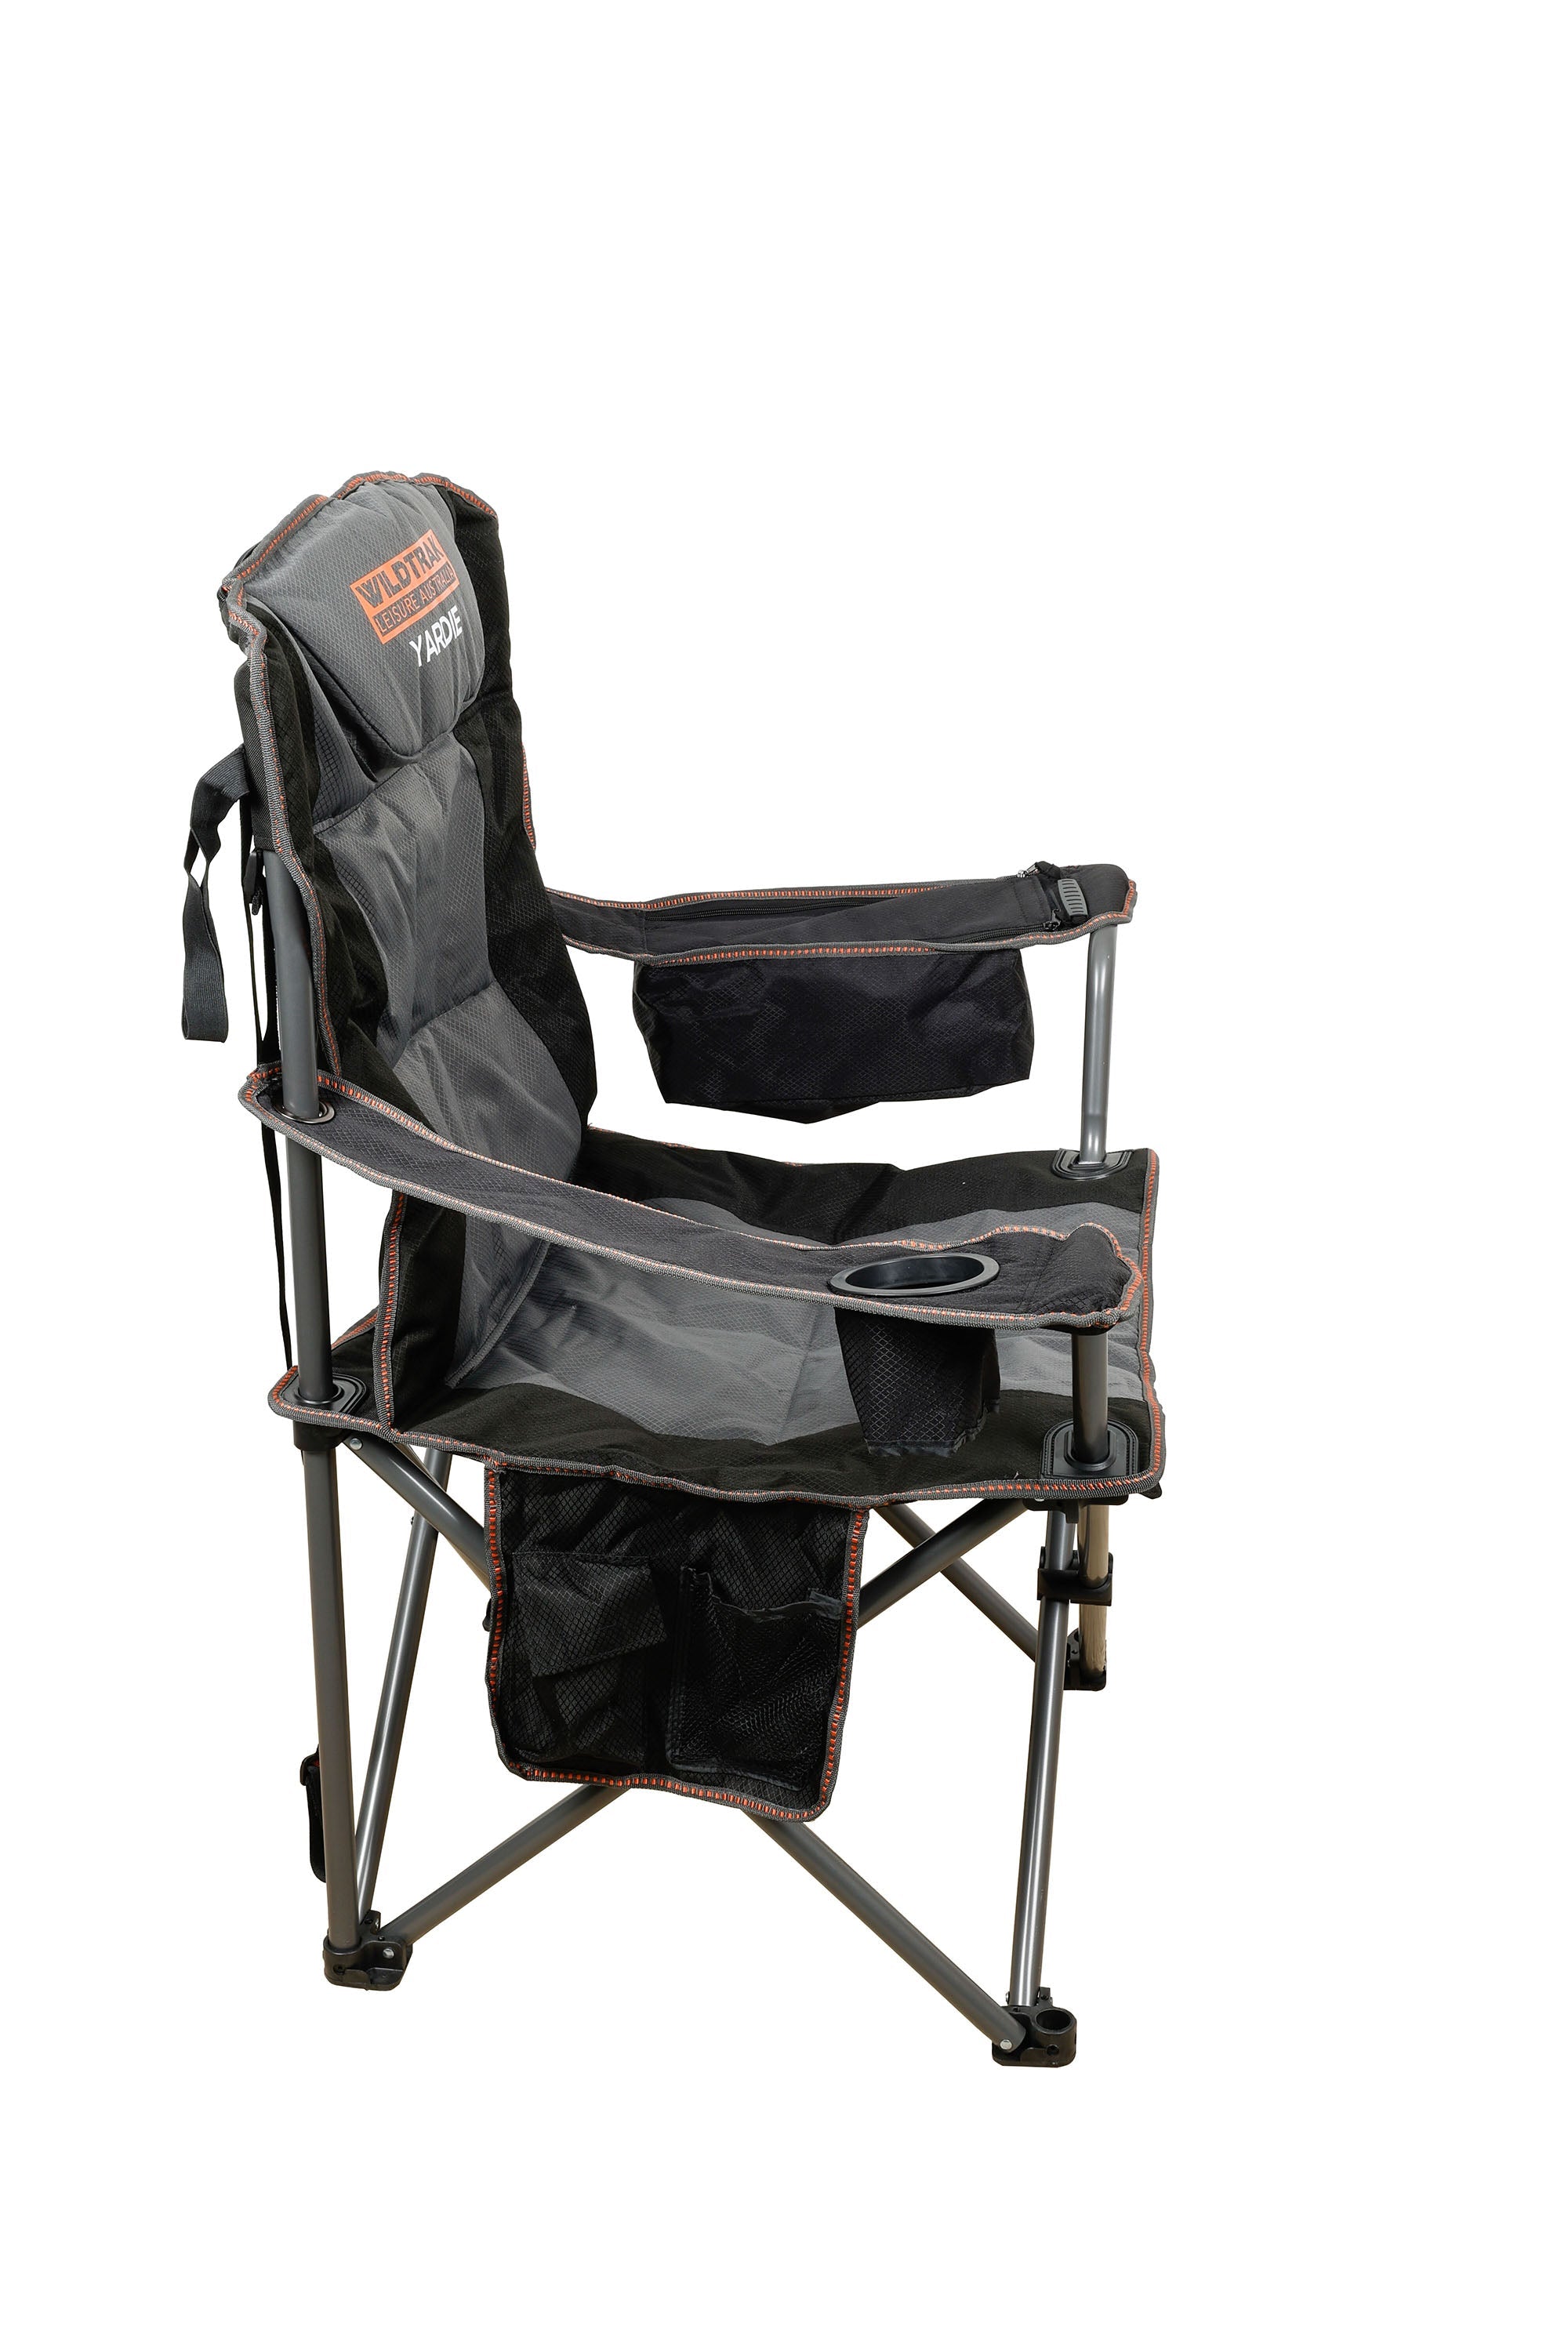 Yardie Cooler Arm Chair